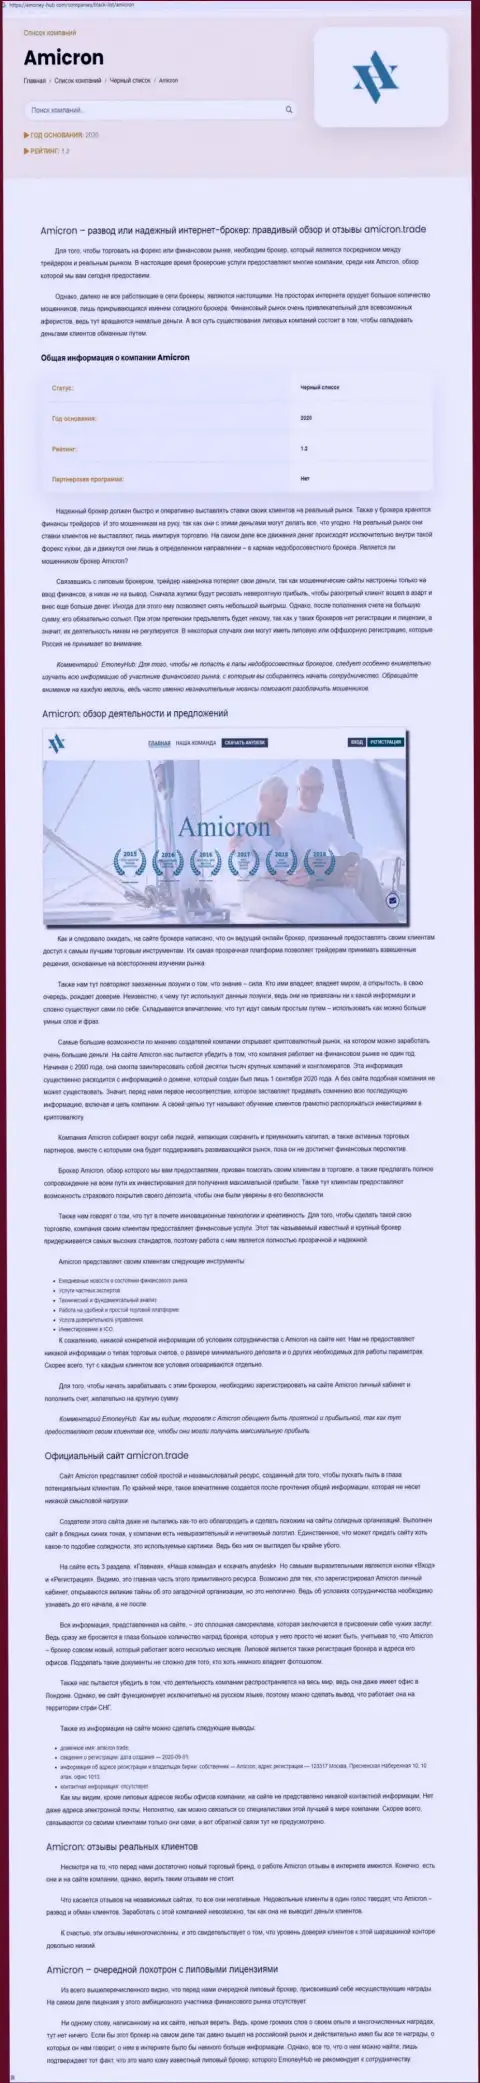 Amicron Trade - нахальный обман клиентов (обзорная статья неправомерных действий)